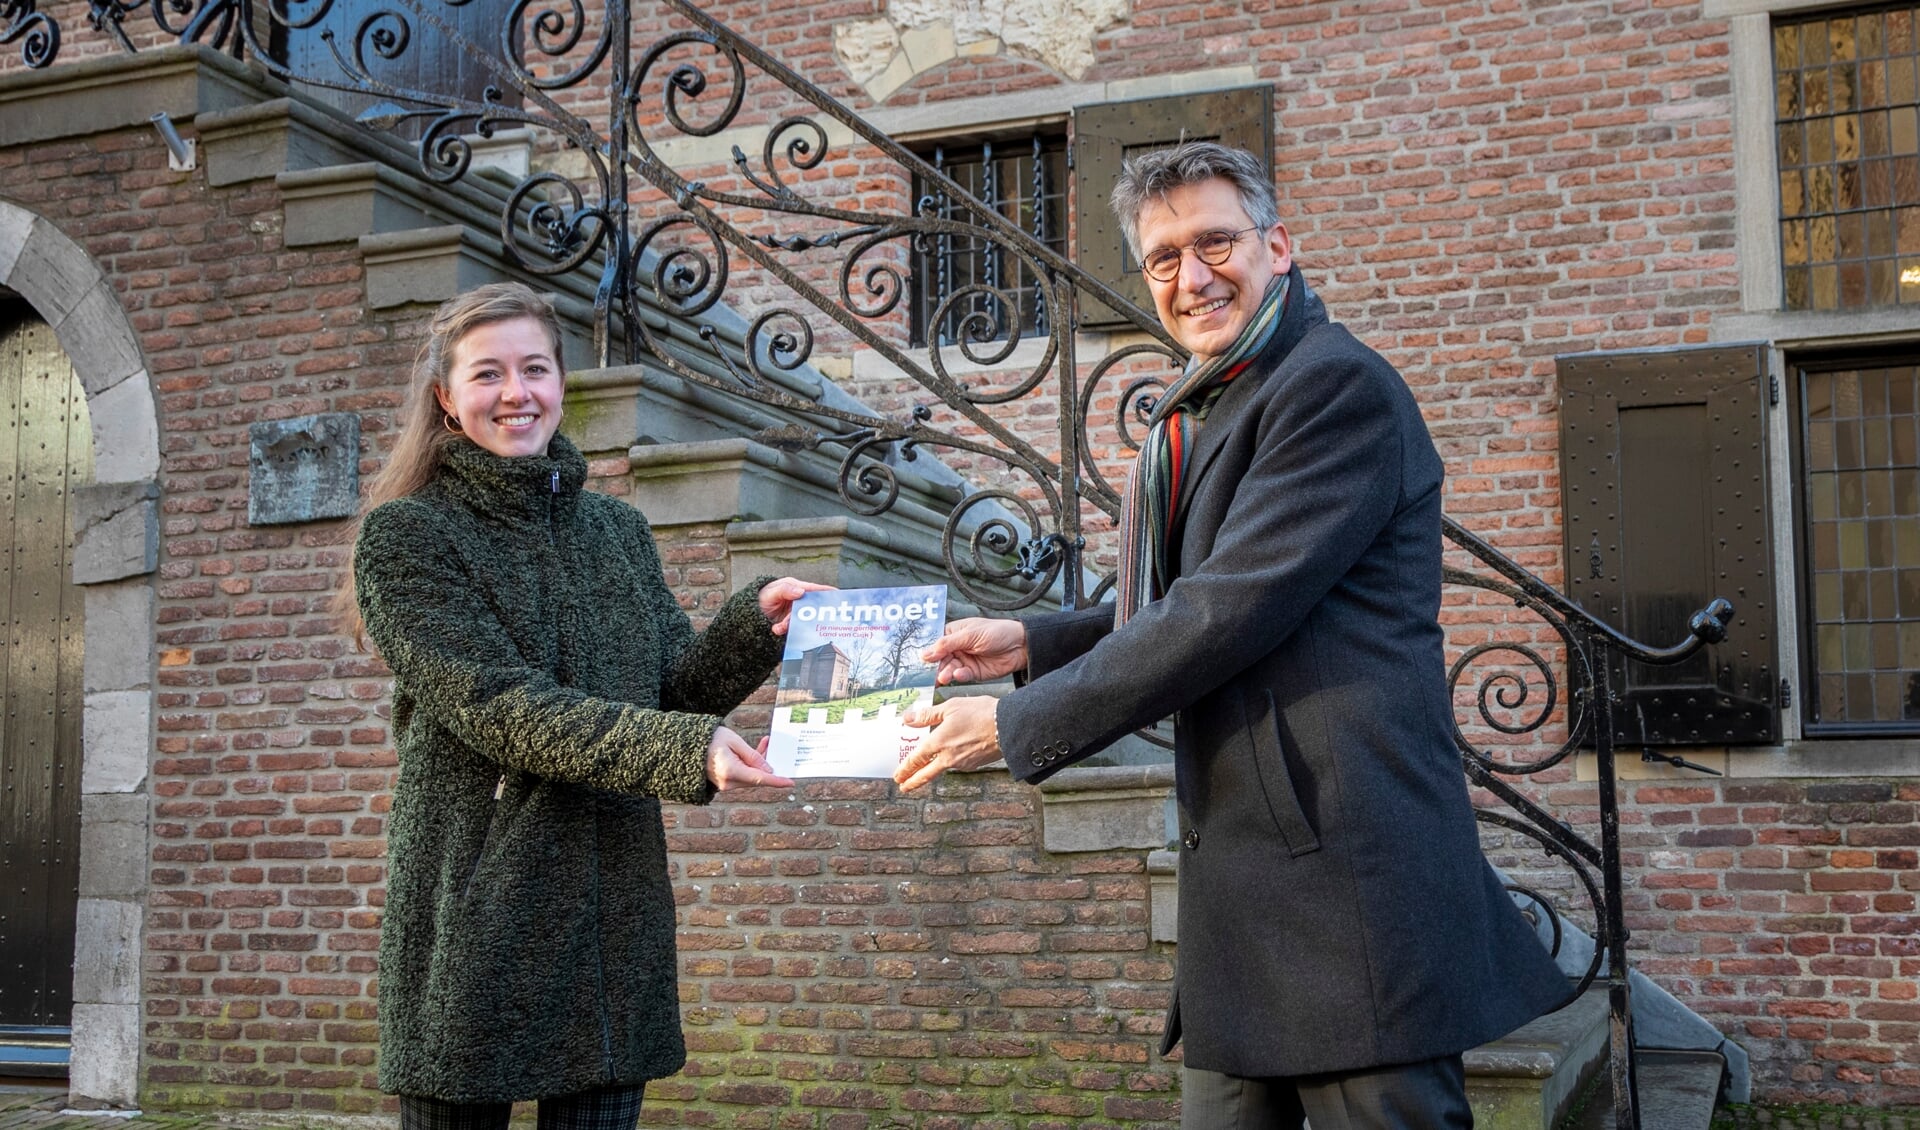 Waarnemend burgemeester Hillenaar heeft het eerste exemplaar vrijdag aan Anne Hirdes uit Grave uitgereikt